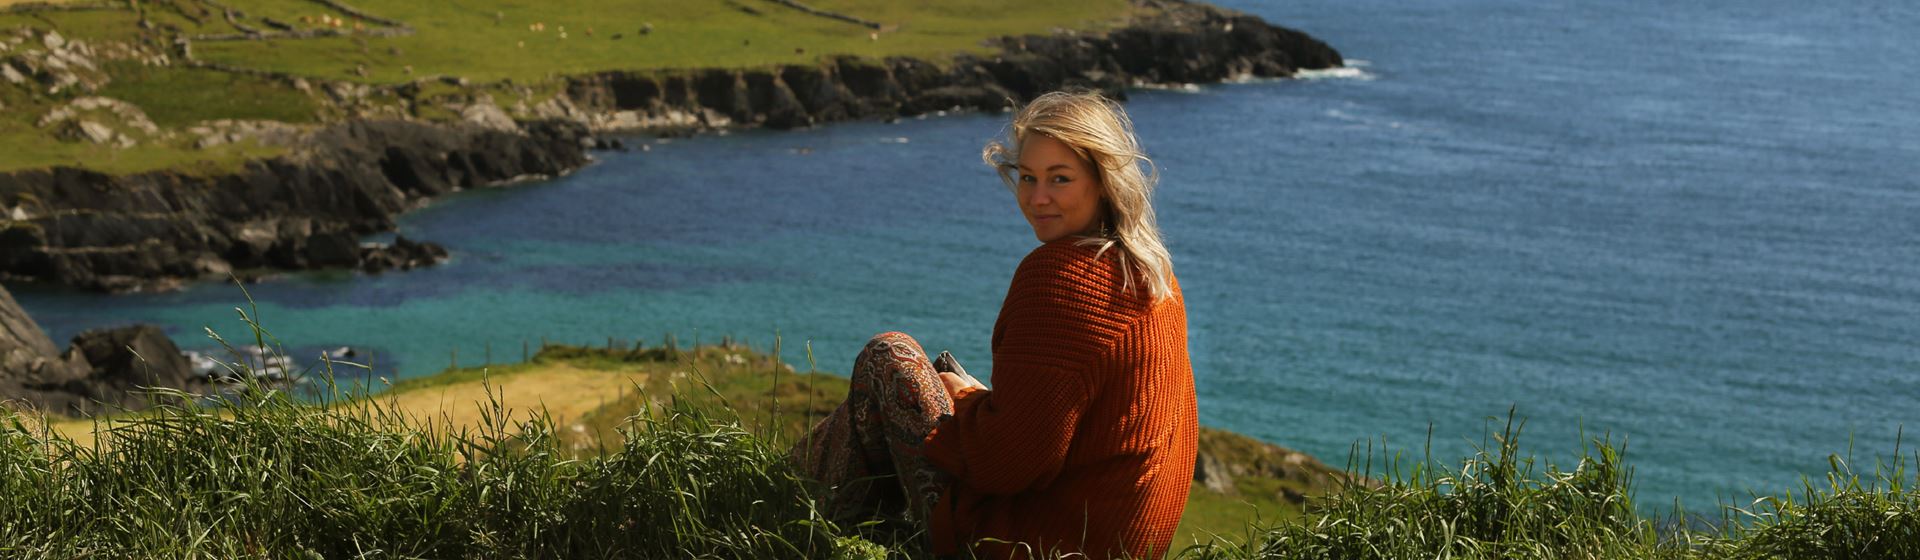 Een vrouw kijkt in de lens. Ze zit in Ierland op een groene heuvel. Op de achtergrond zijn water en heuvels te zien.